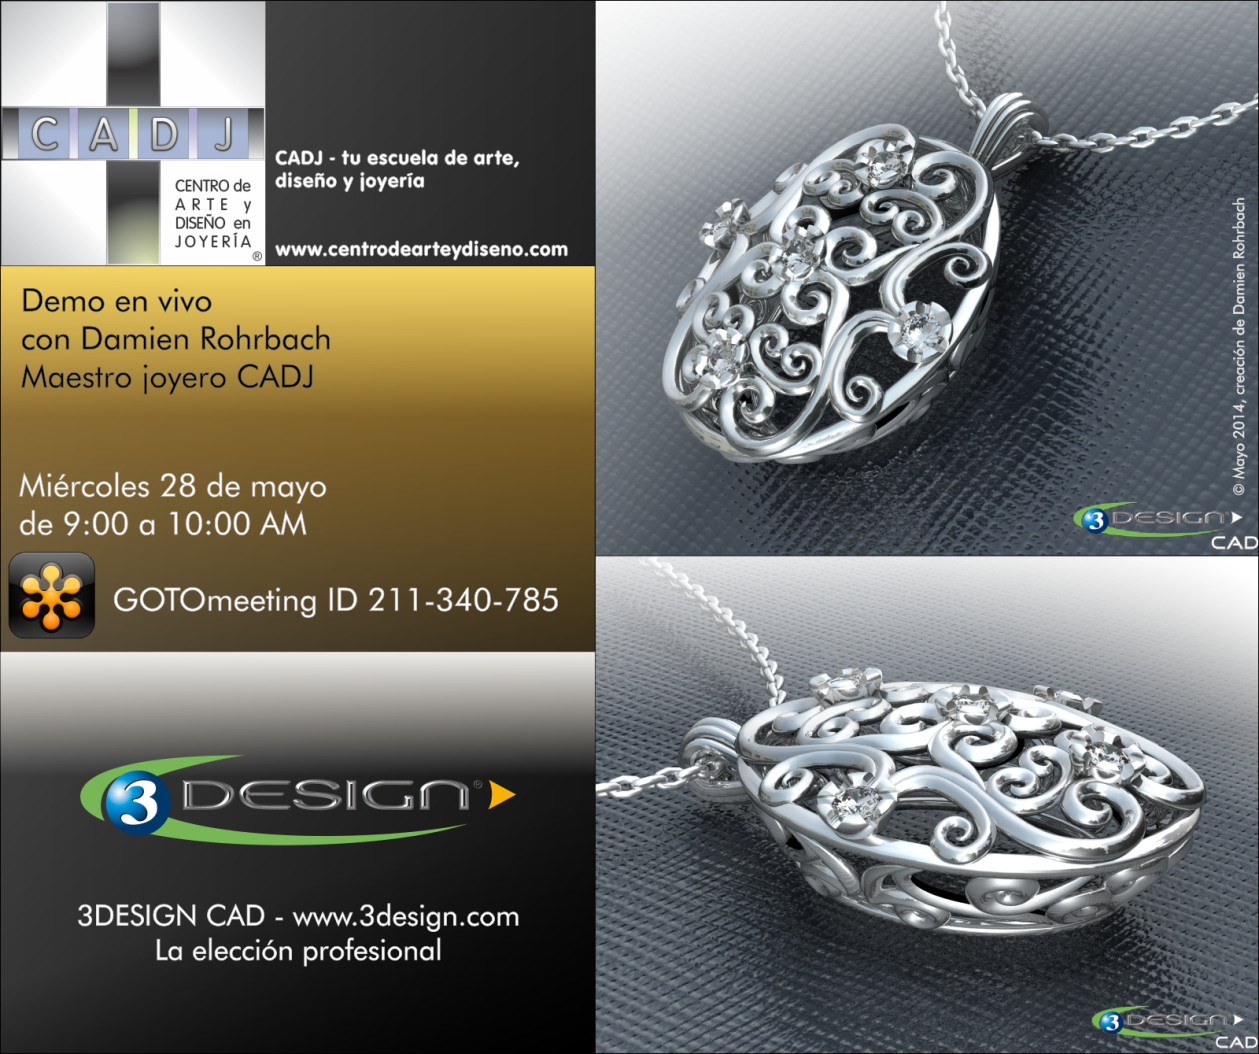 Aretes en estado de prototipo, creación de Damien Rohrbach con 3DESIGN CAD V8, Escuela de Arte, Diseño y Joyería CADJ ®